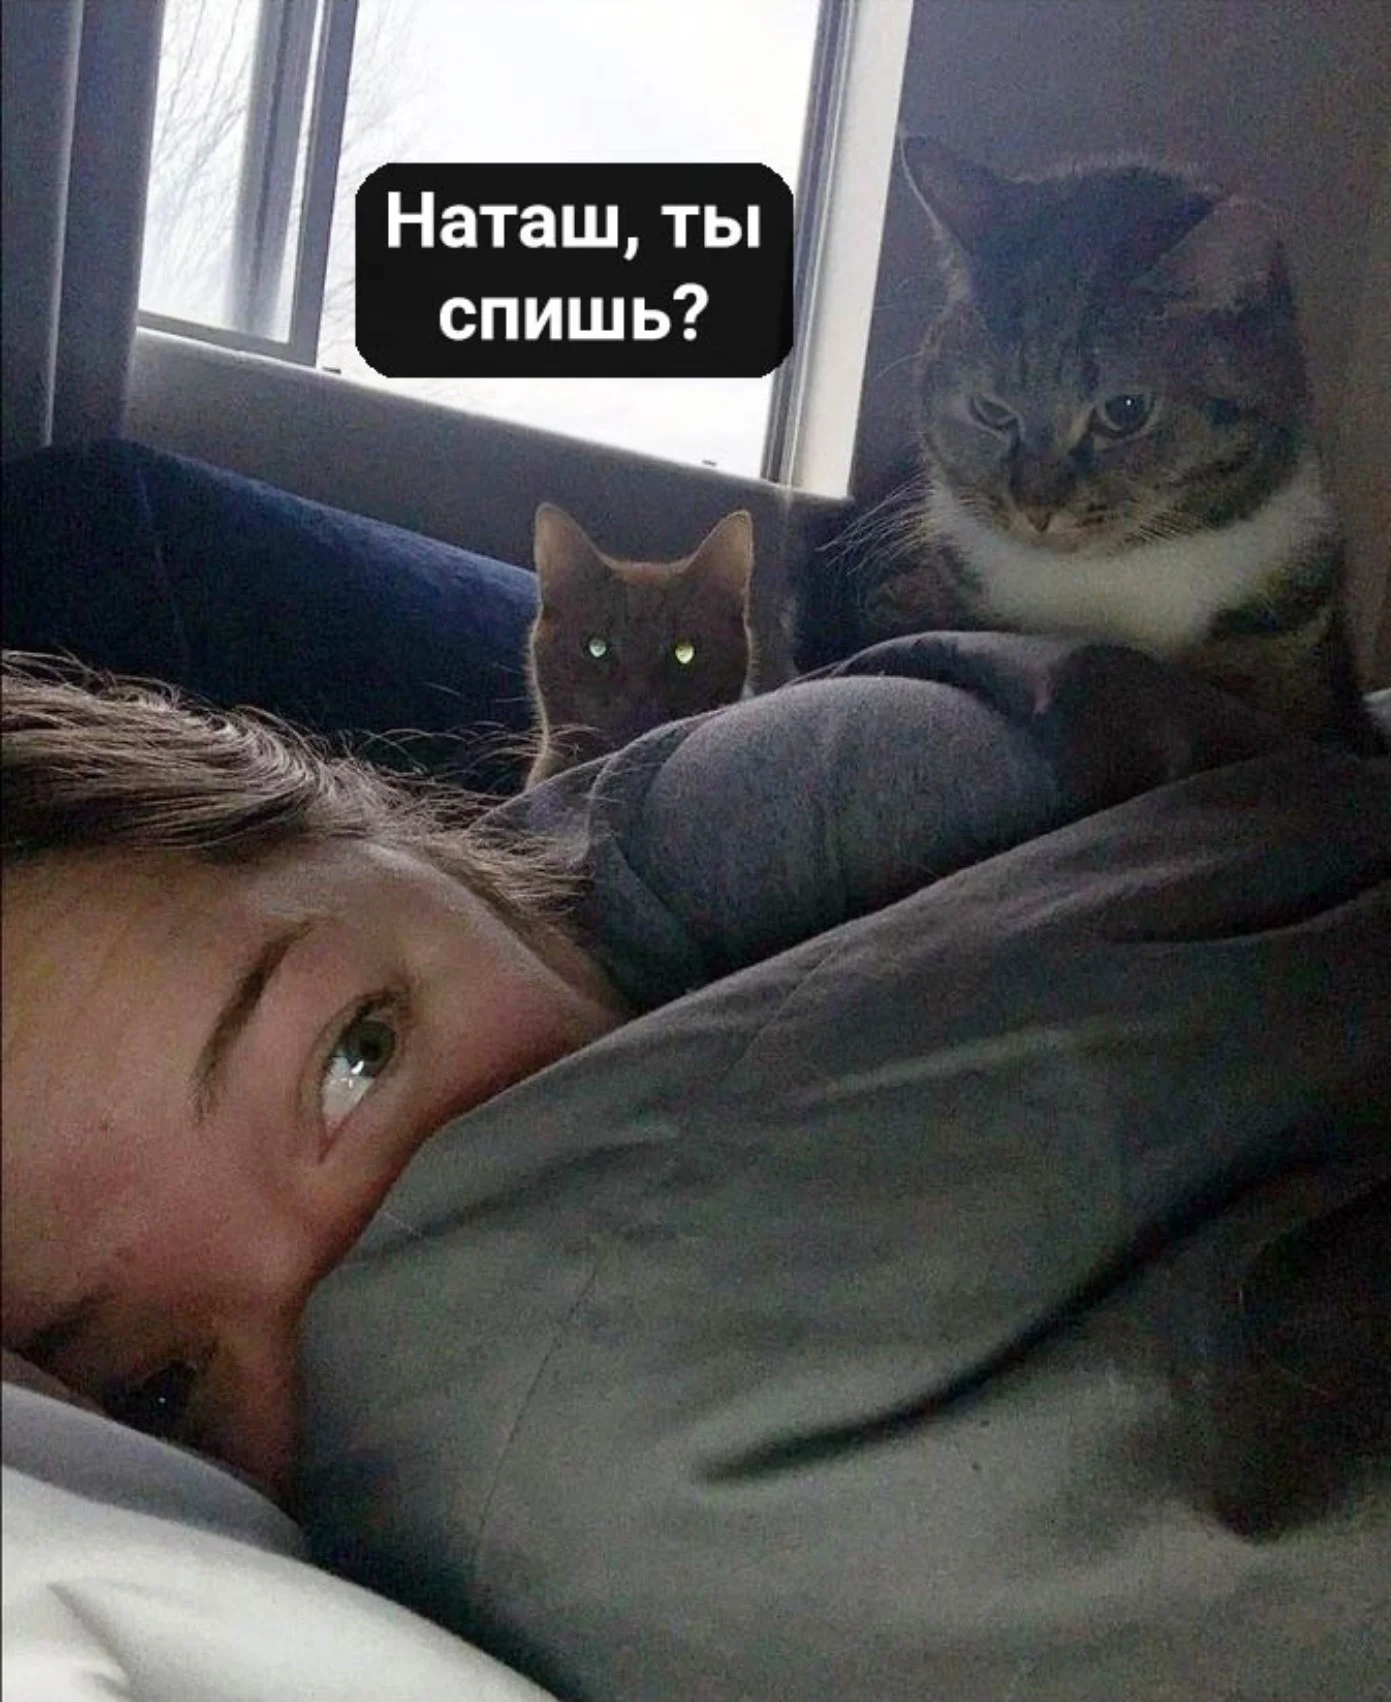 Сеть заполонили мемы про котов и Наташу – мы собрали лучшие из них - фото 476265